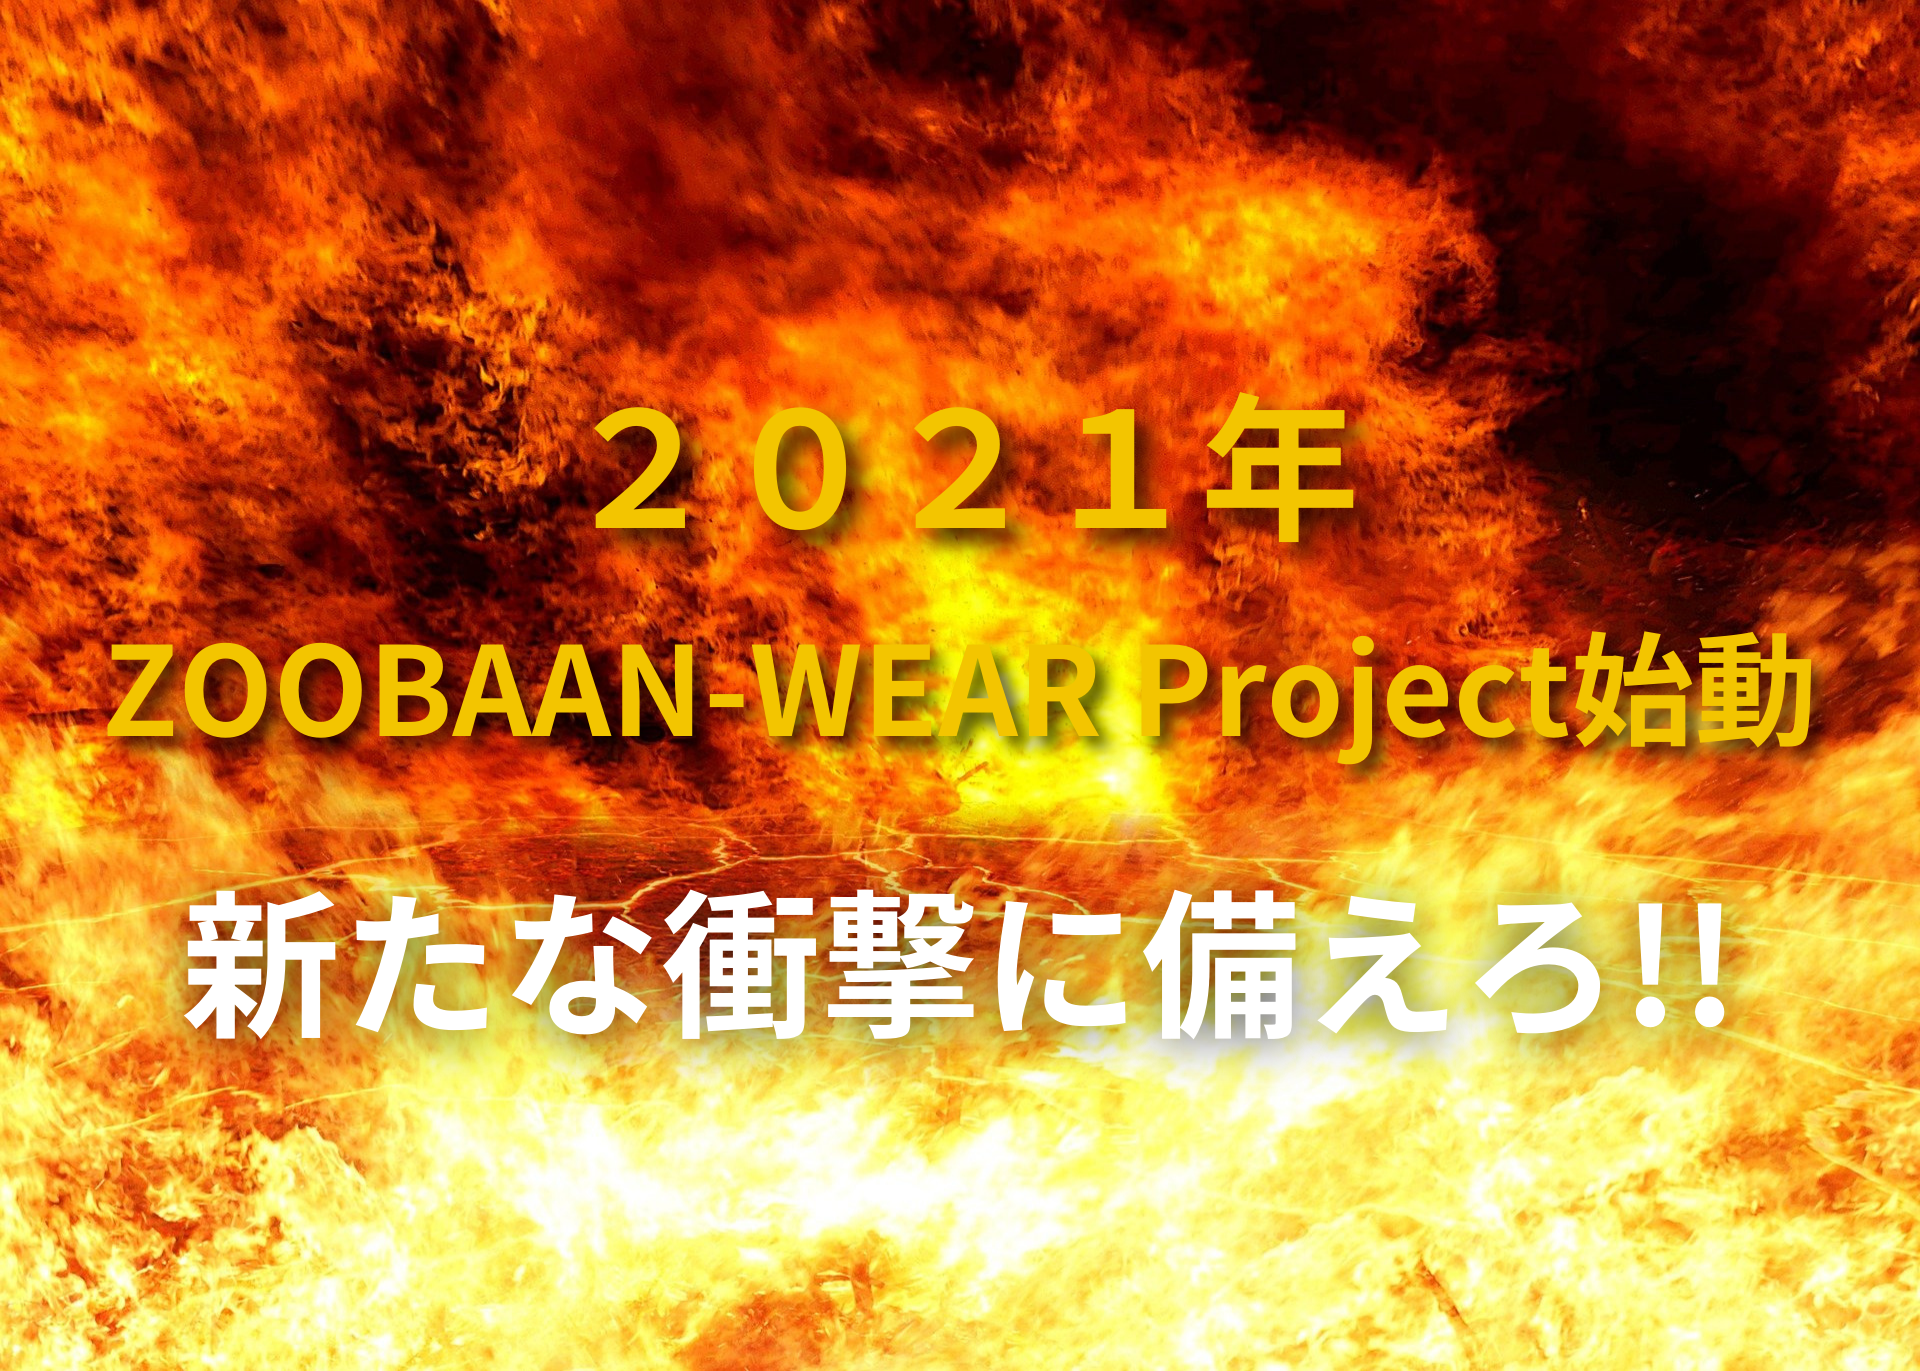 ２０２１年 ZOOBAAN-WEAR Project始動